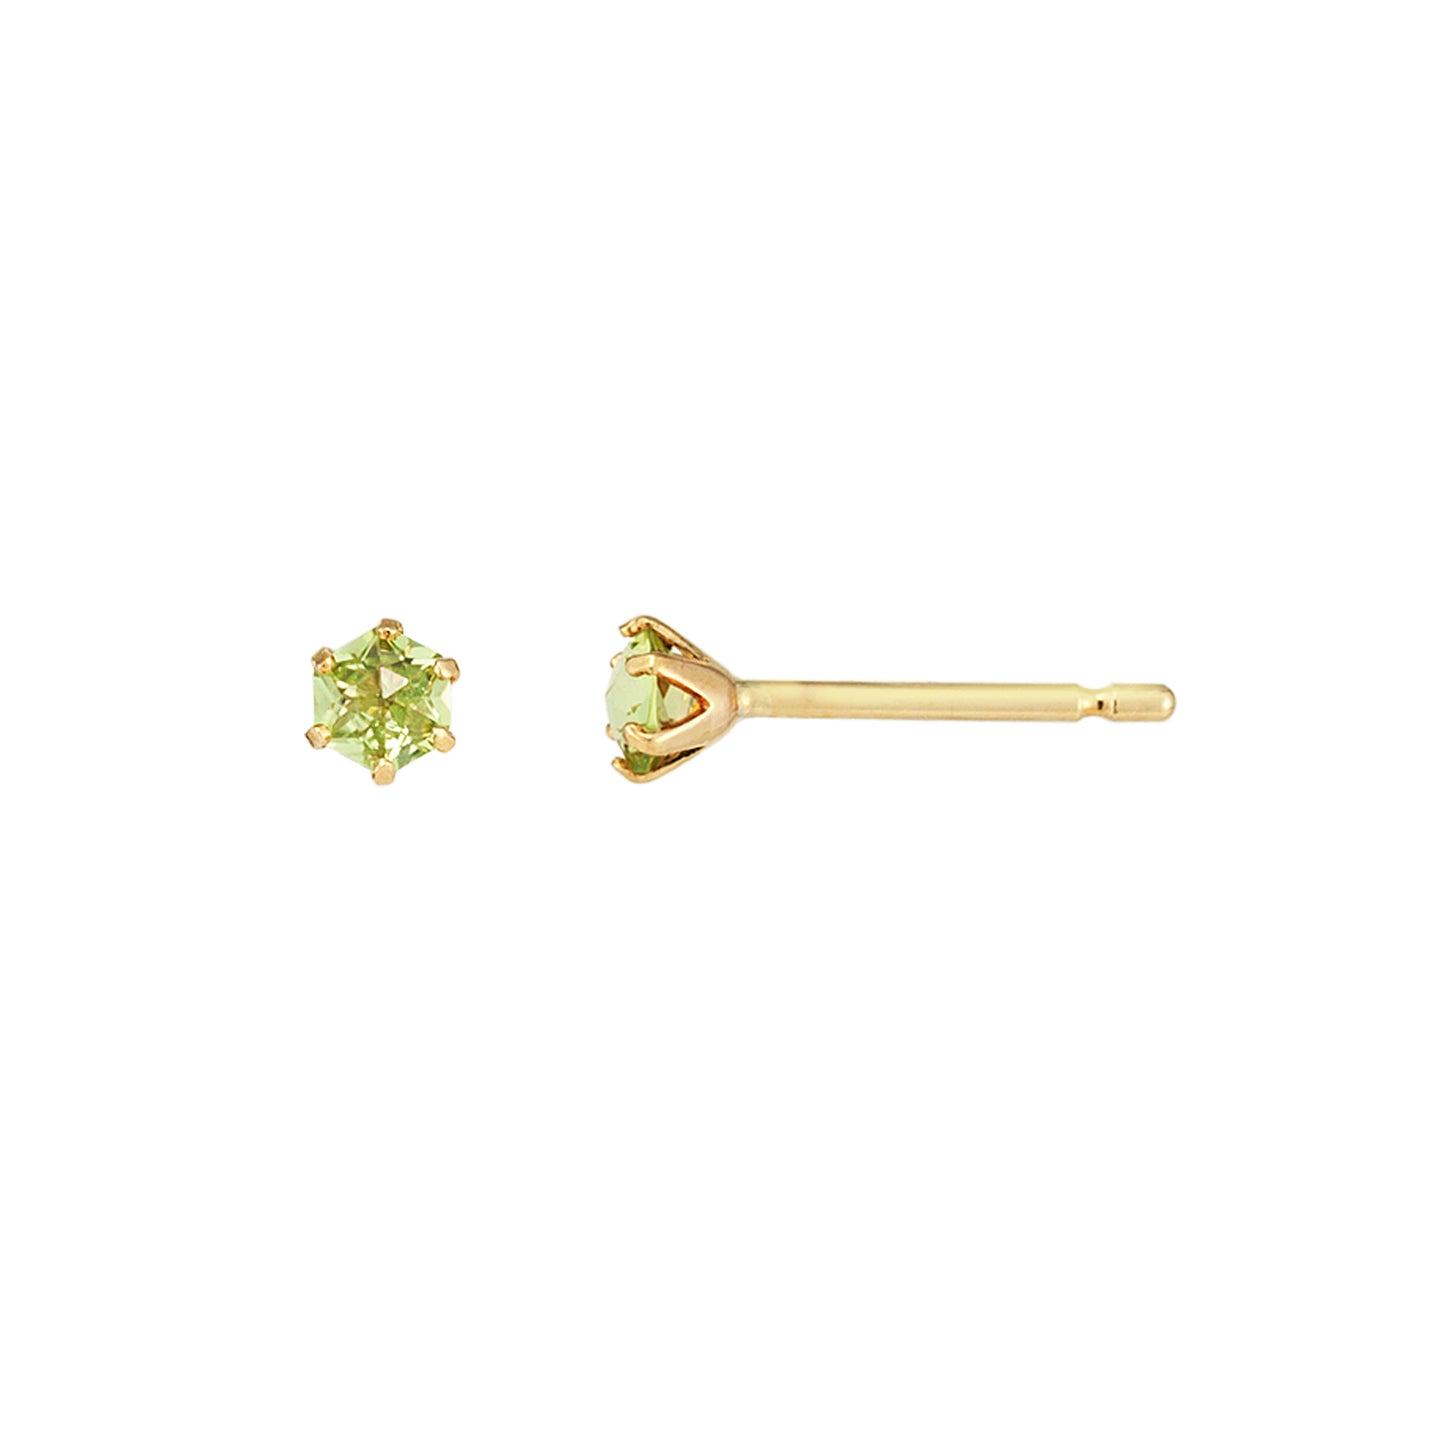 [Second Earrings] 18K Yellow Gold Peridot Rose Cut Earrings - Product Image